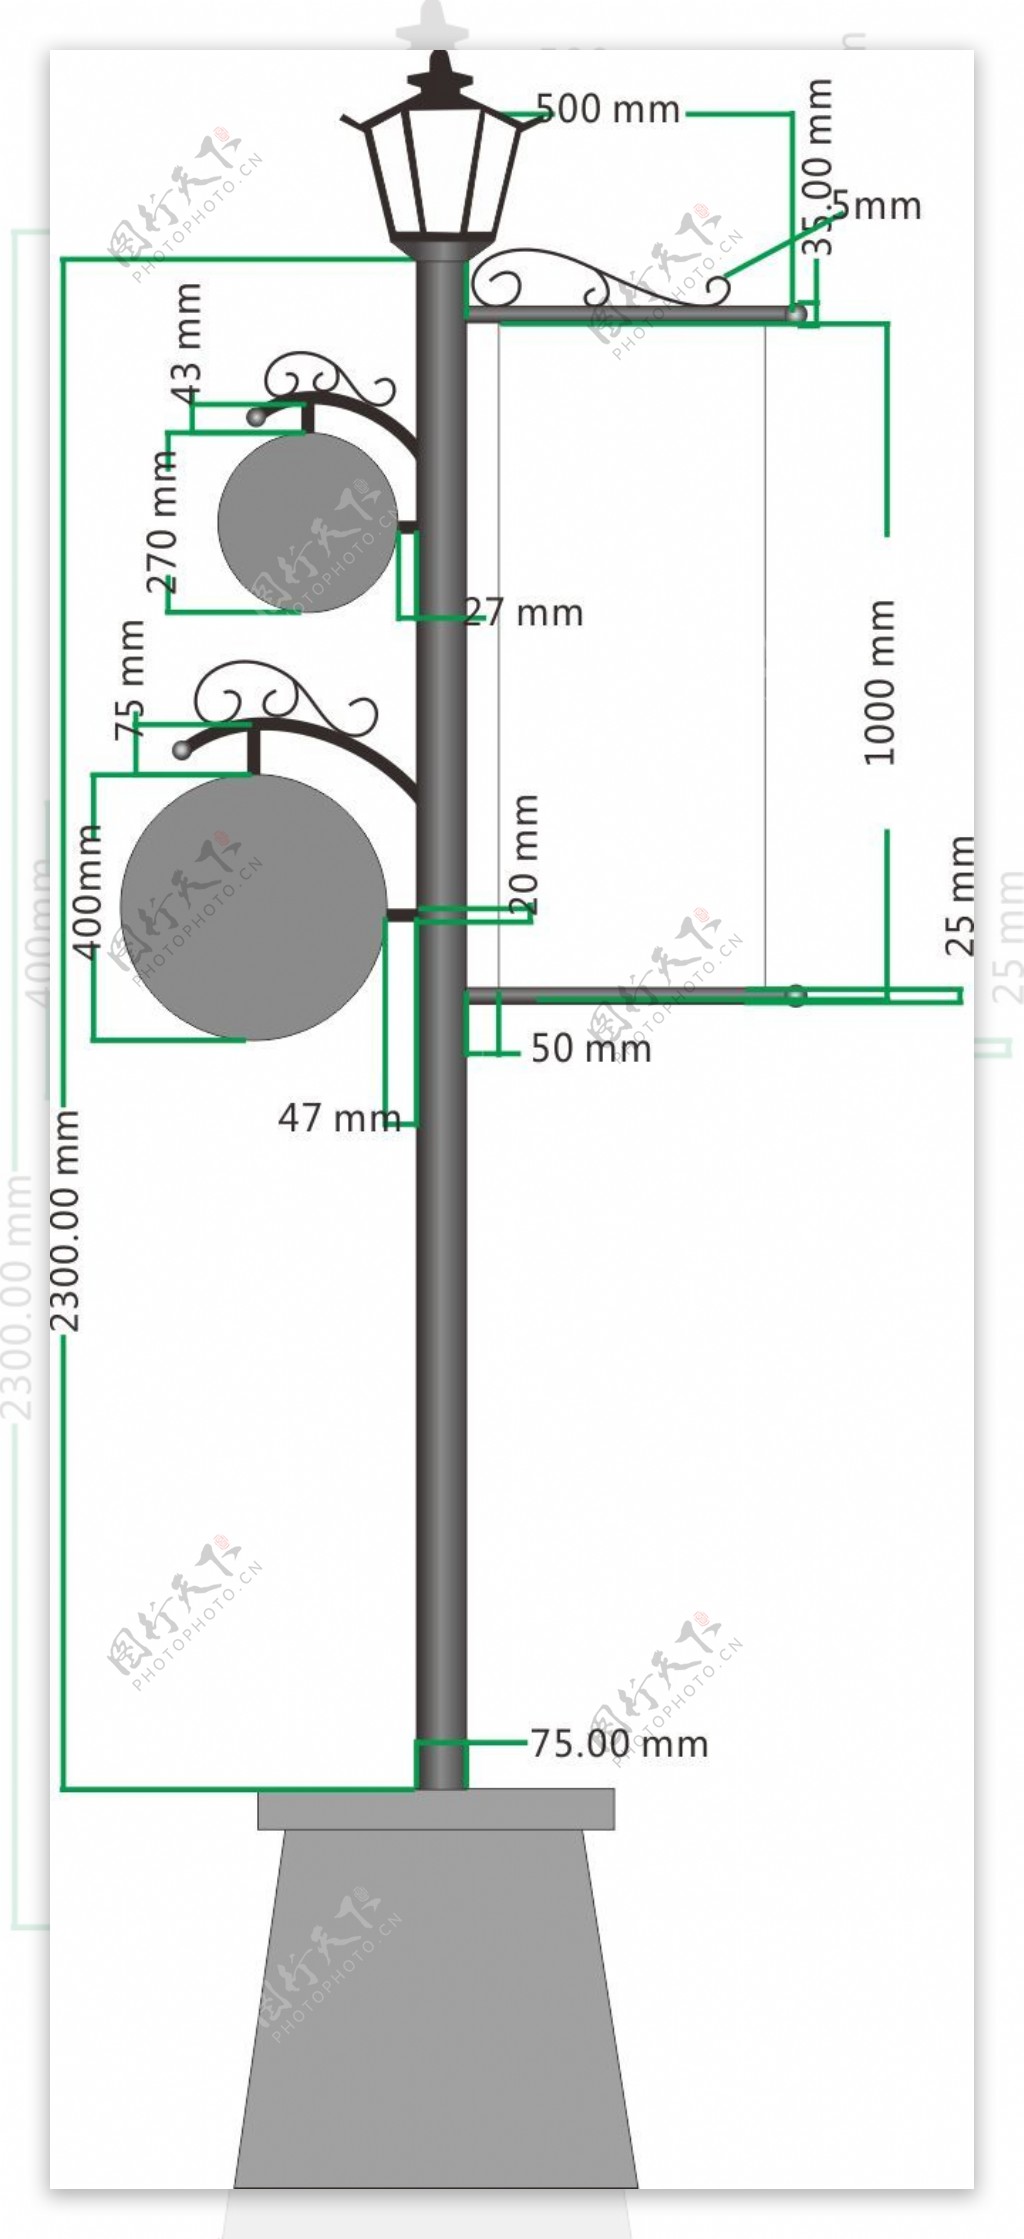 路灯杆组装方法,路灯杆高度,路灯杆的规格,路灯杆间距_齐家网